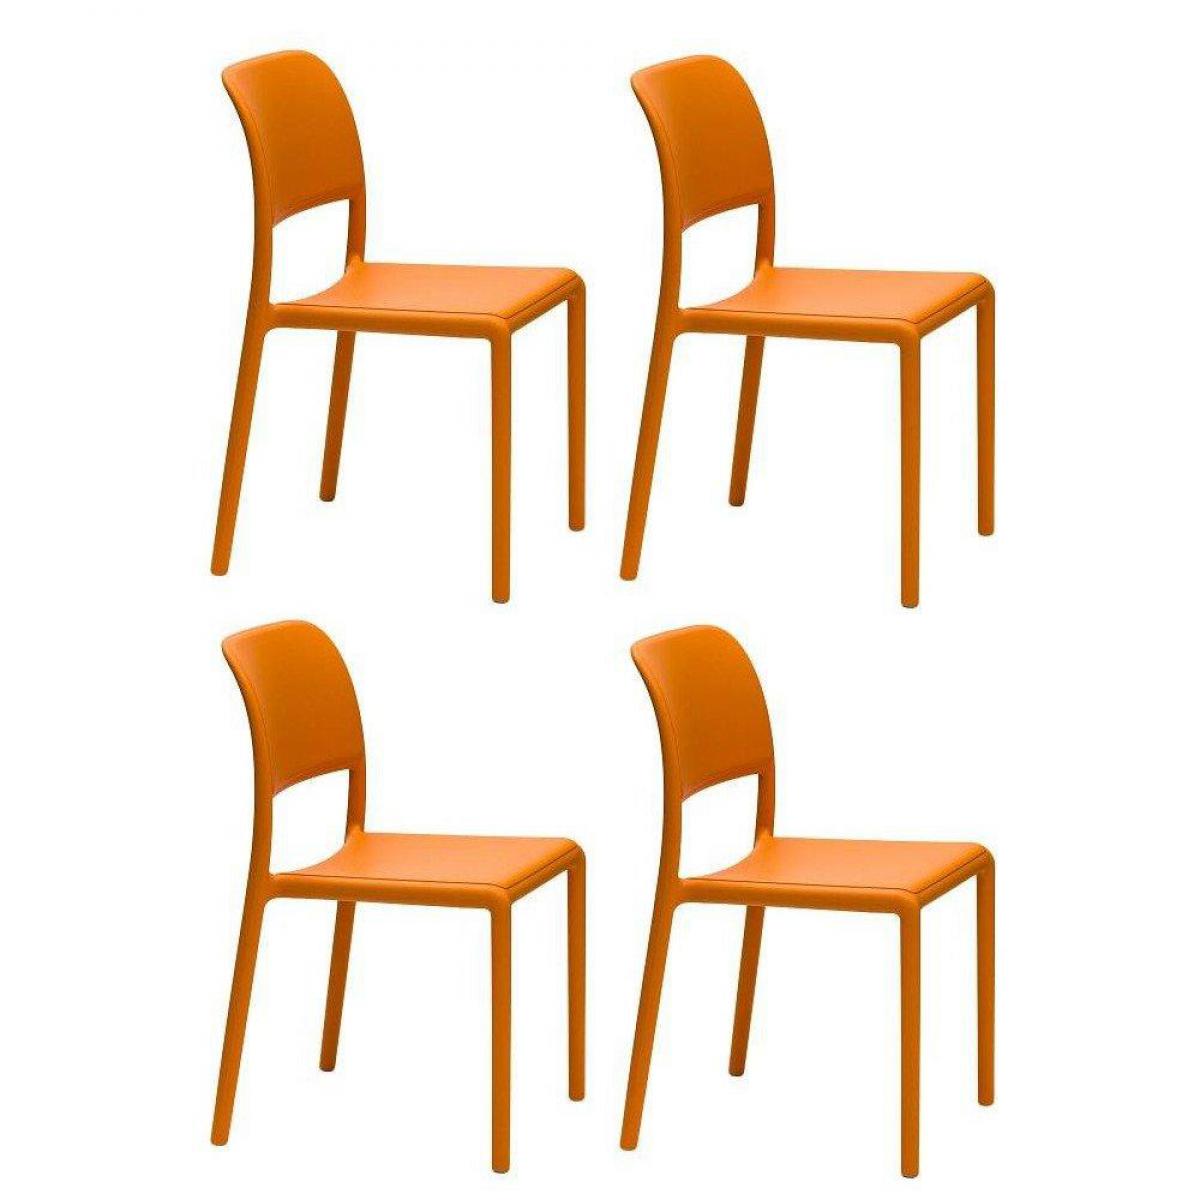 Inside 75 - Lot de 4 chaises RIVER empilables design coloris orange. - Chaises